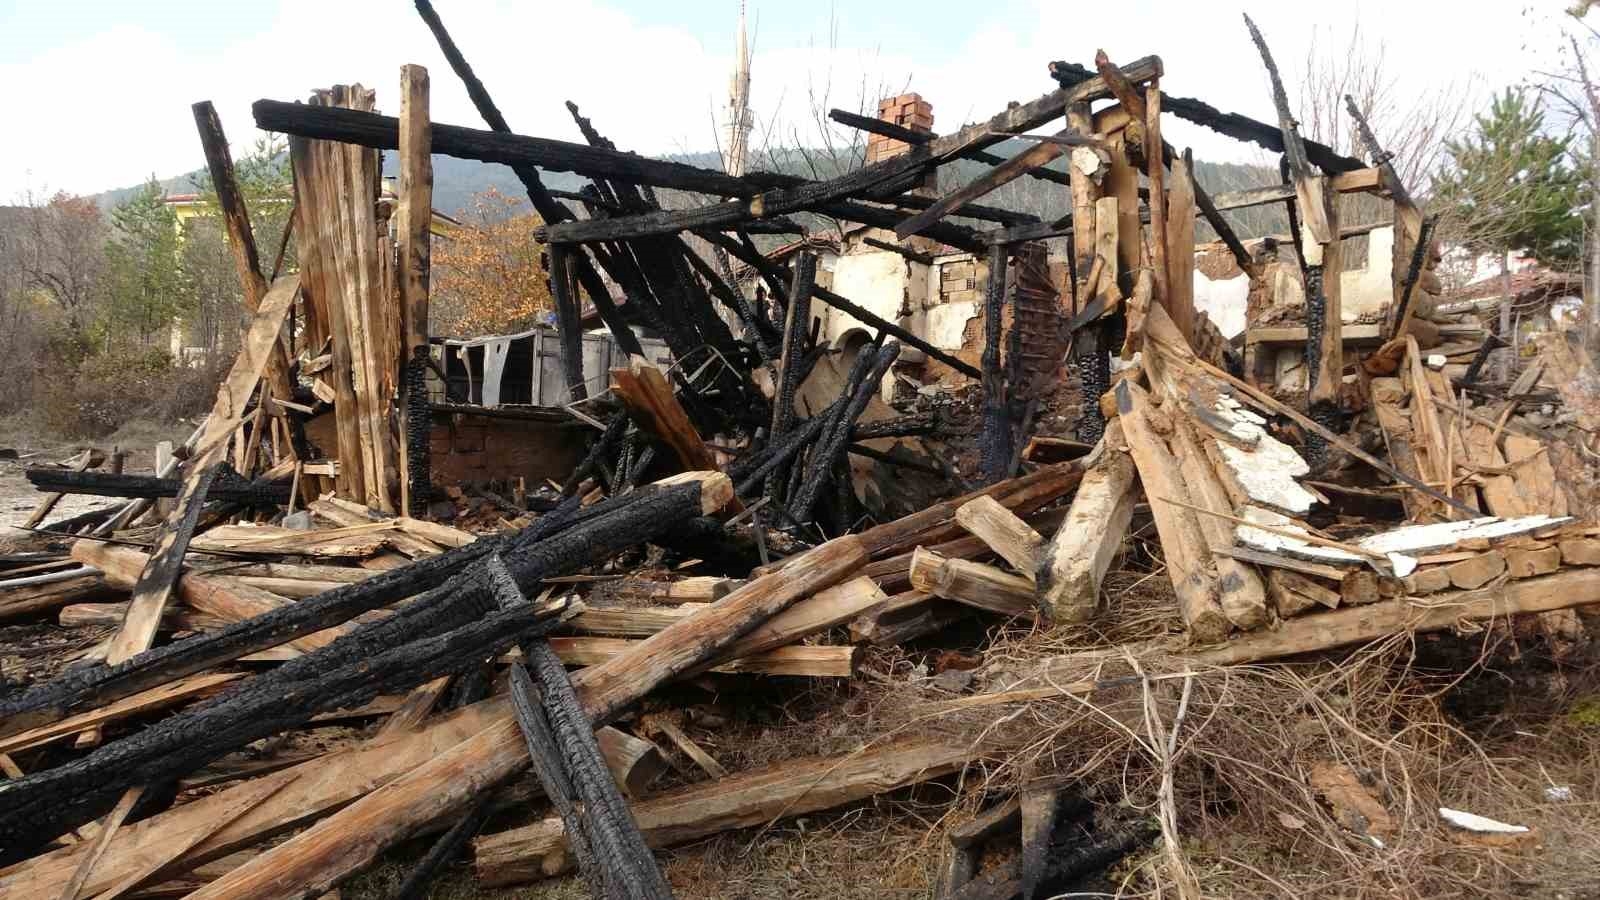 Canlı yayında evini yakmıştı, köylüler yaşanan olayı anlattı - ASAYİŞ -  Karaman Haber